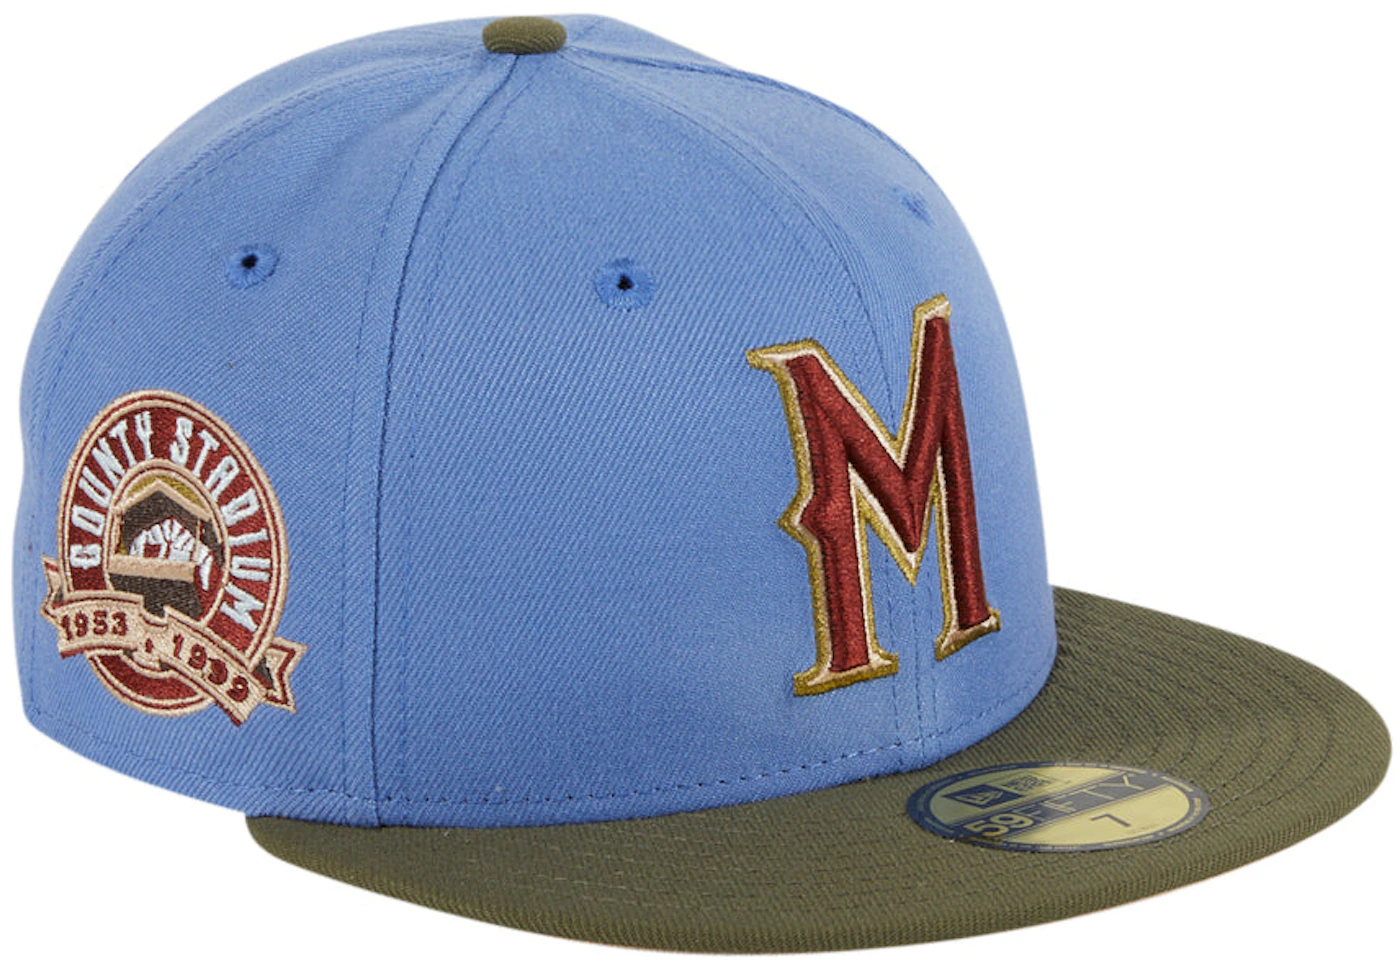 June 18, 2023 Milwaukee Brewers - Bucket Hat - Stadium Giveaway Exchange